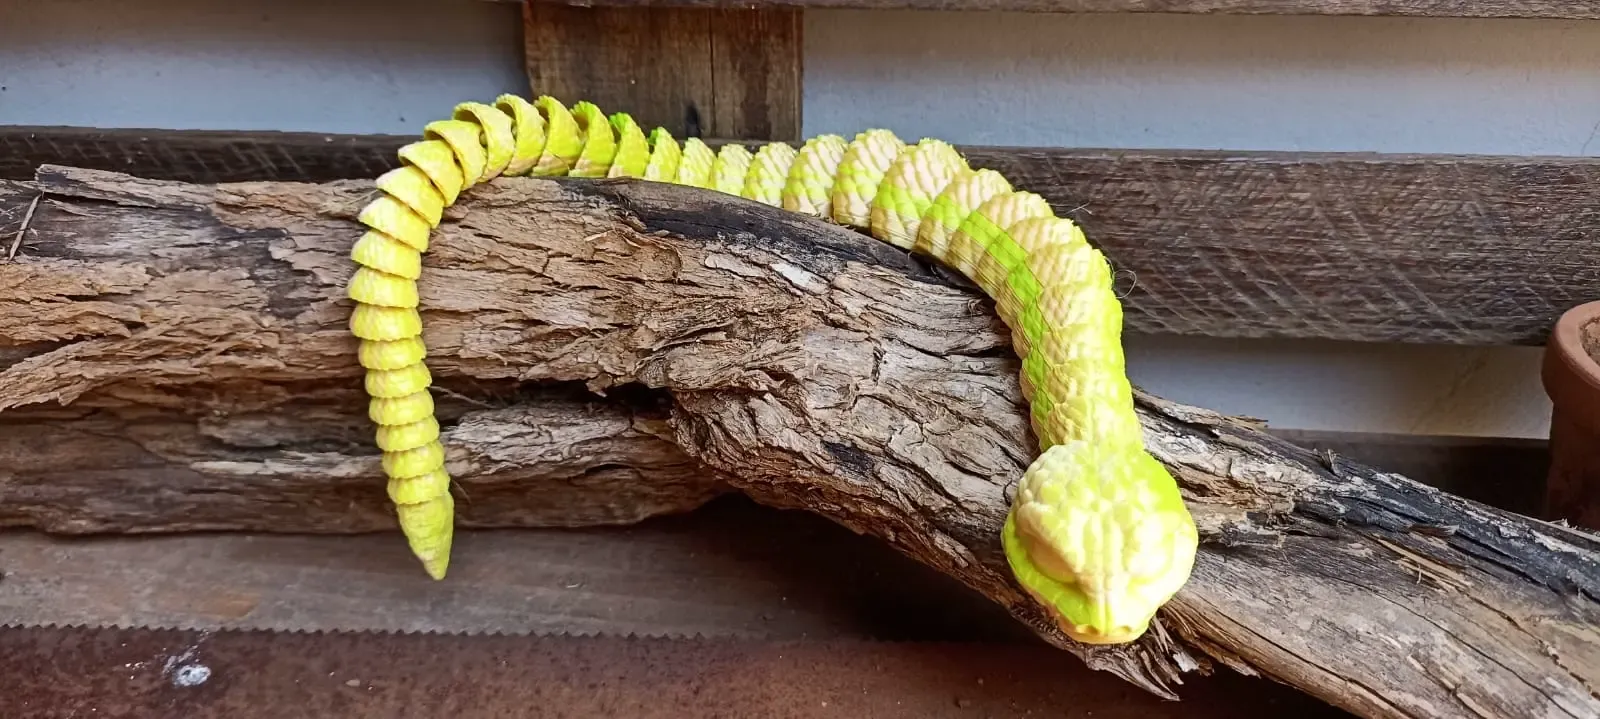 chibi flex snake